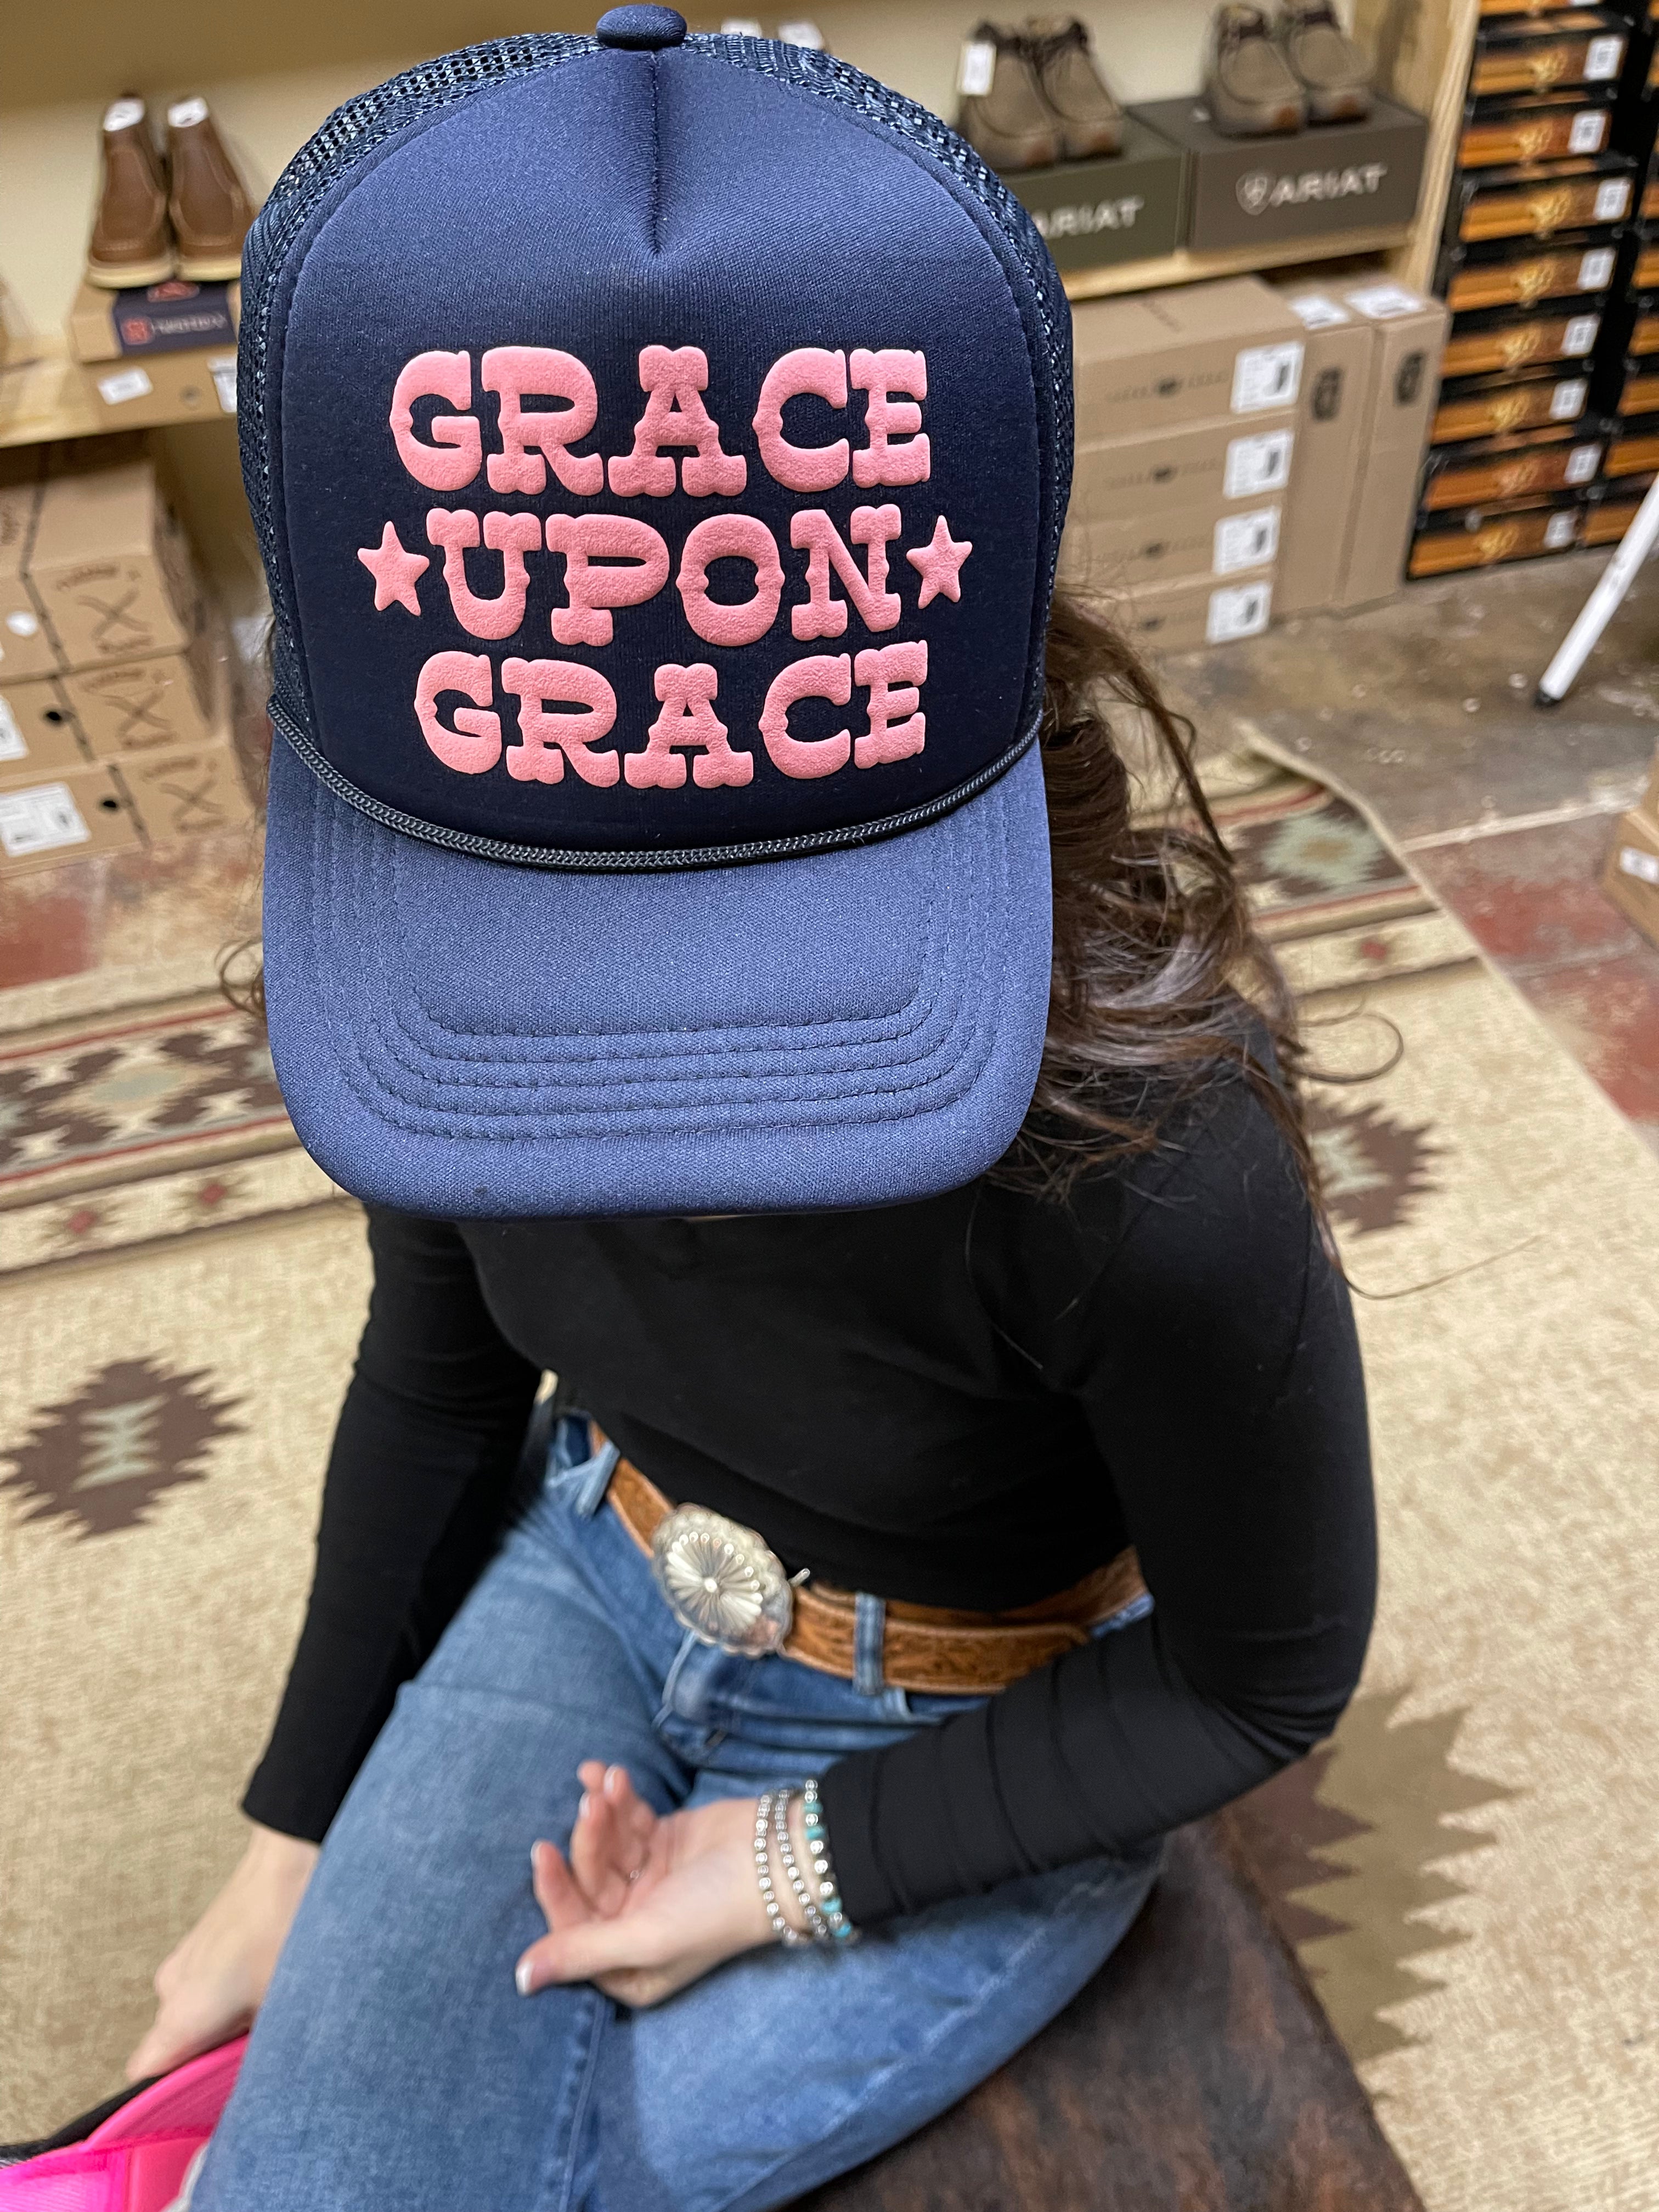 Grace upon grace cap